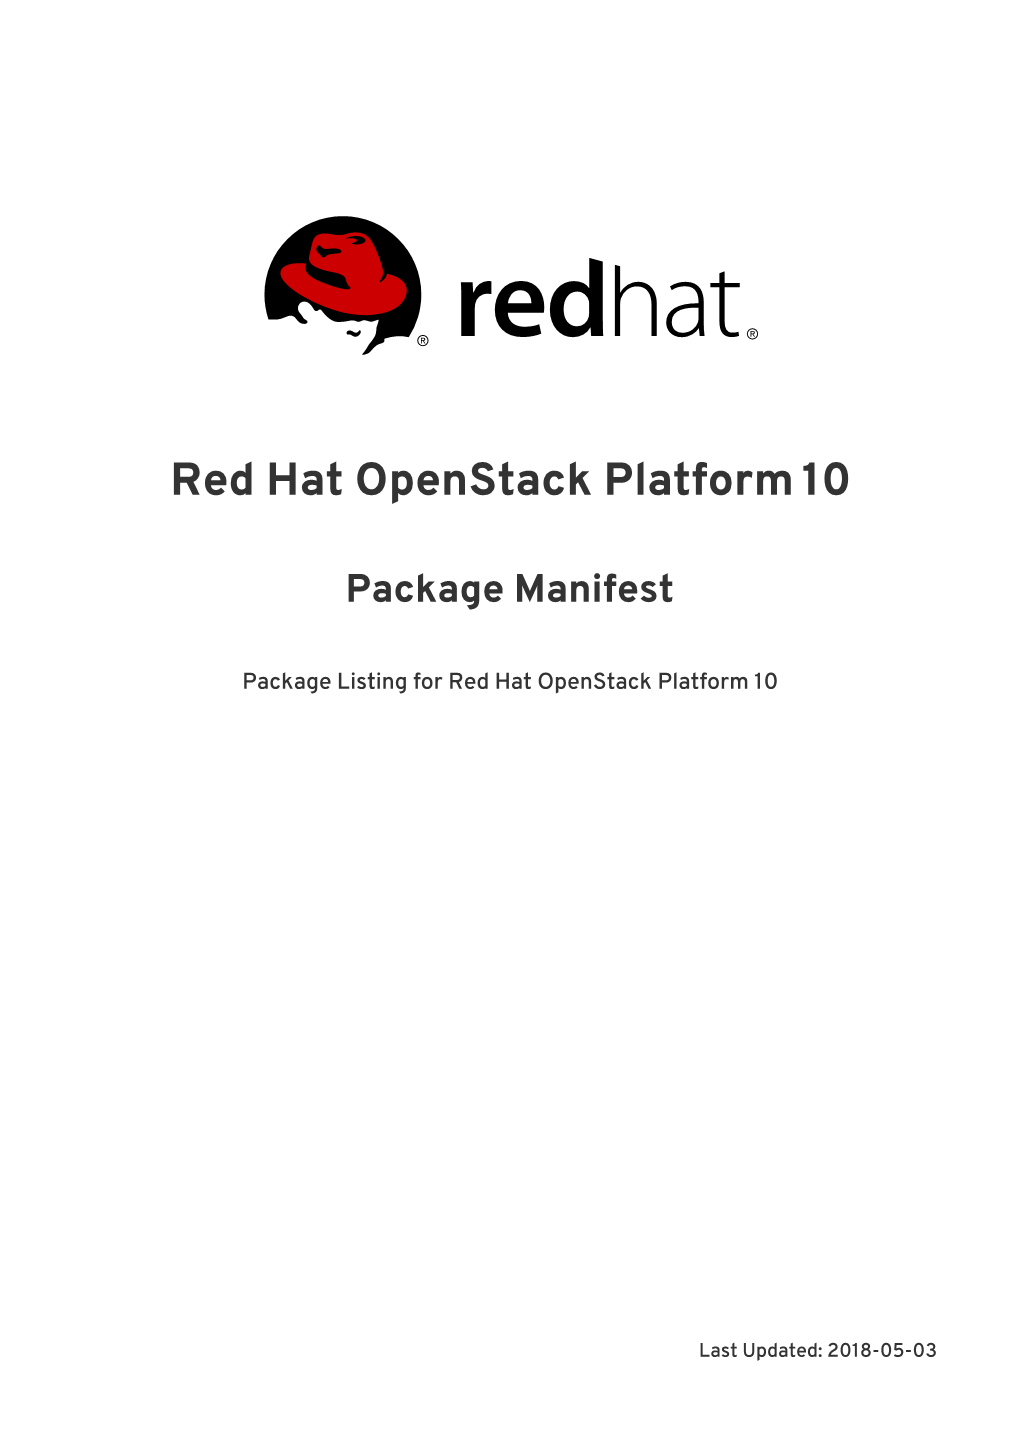 Red Hat Openstack Platform 10 Package Manifest